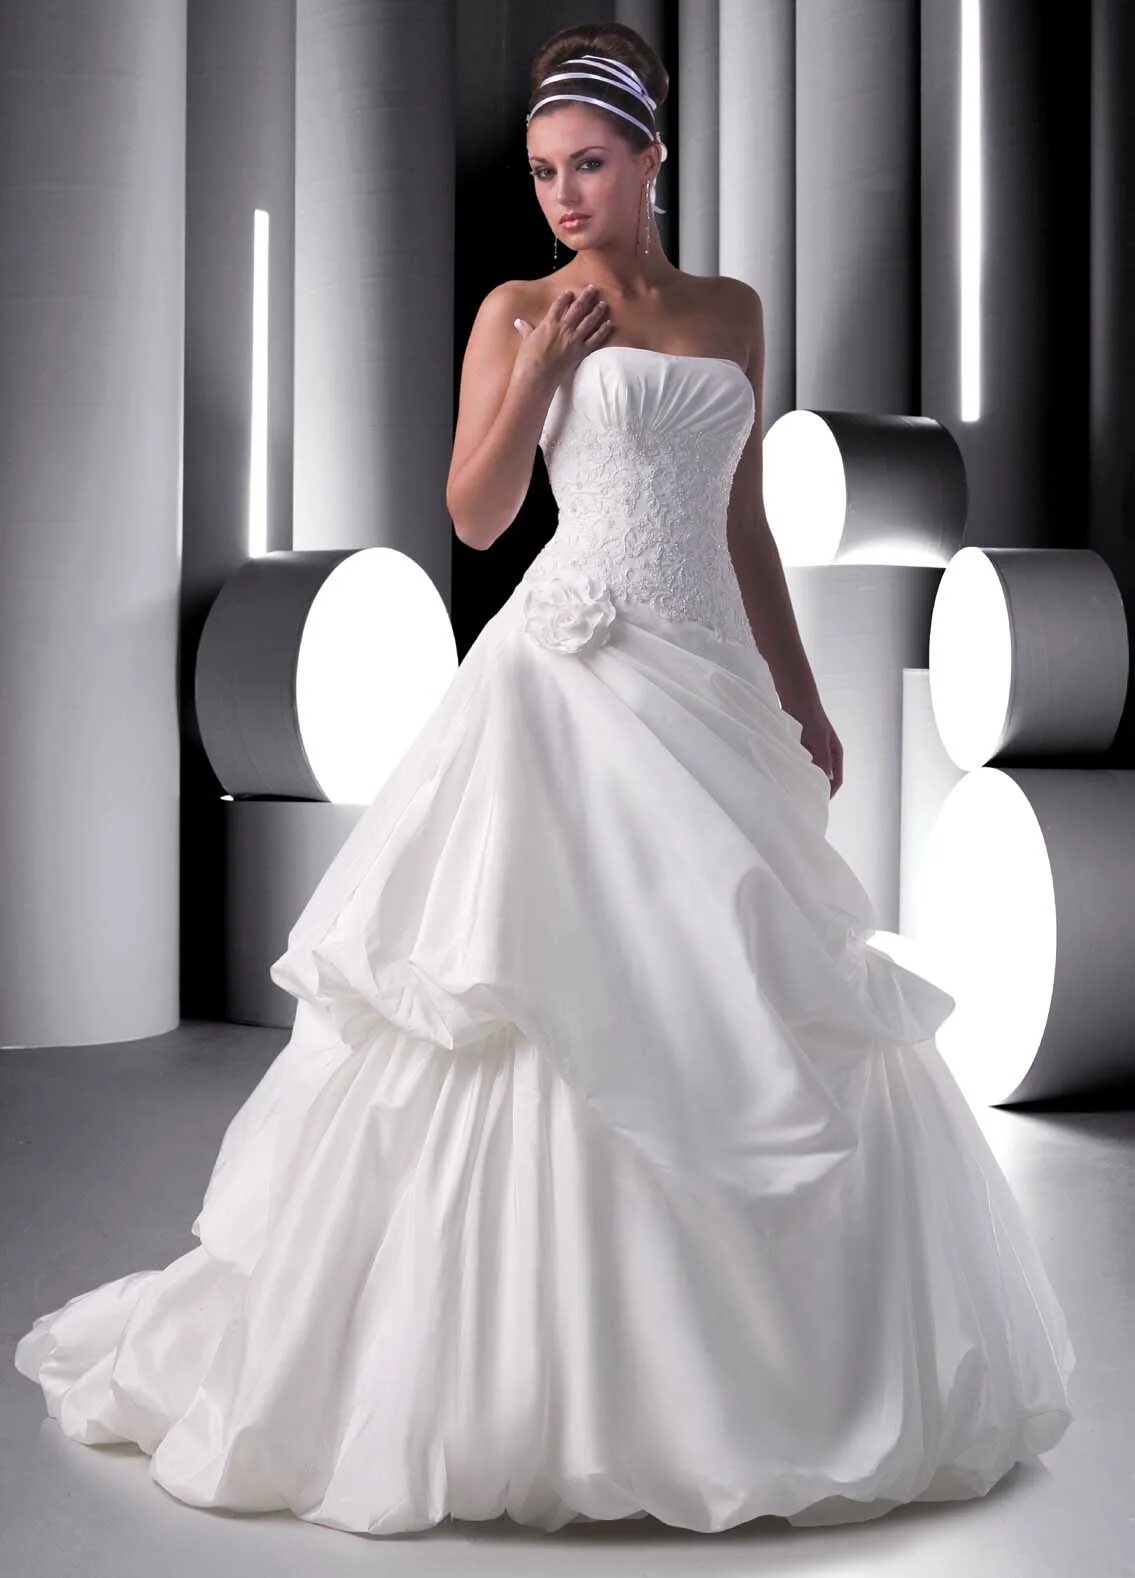 Свадебное платье Crystal Design Soprano. Свадебные платья Каплун. Wedding Gown платья Свадебные. Производитель свадебных платьев